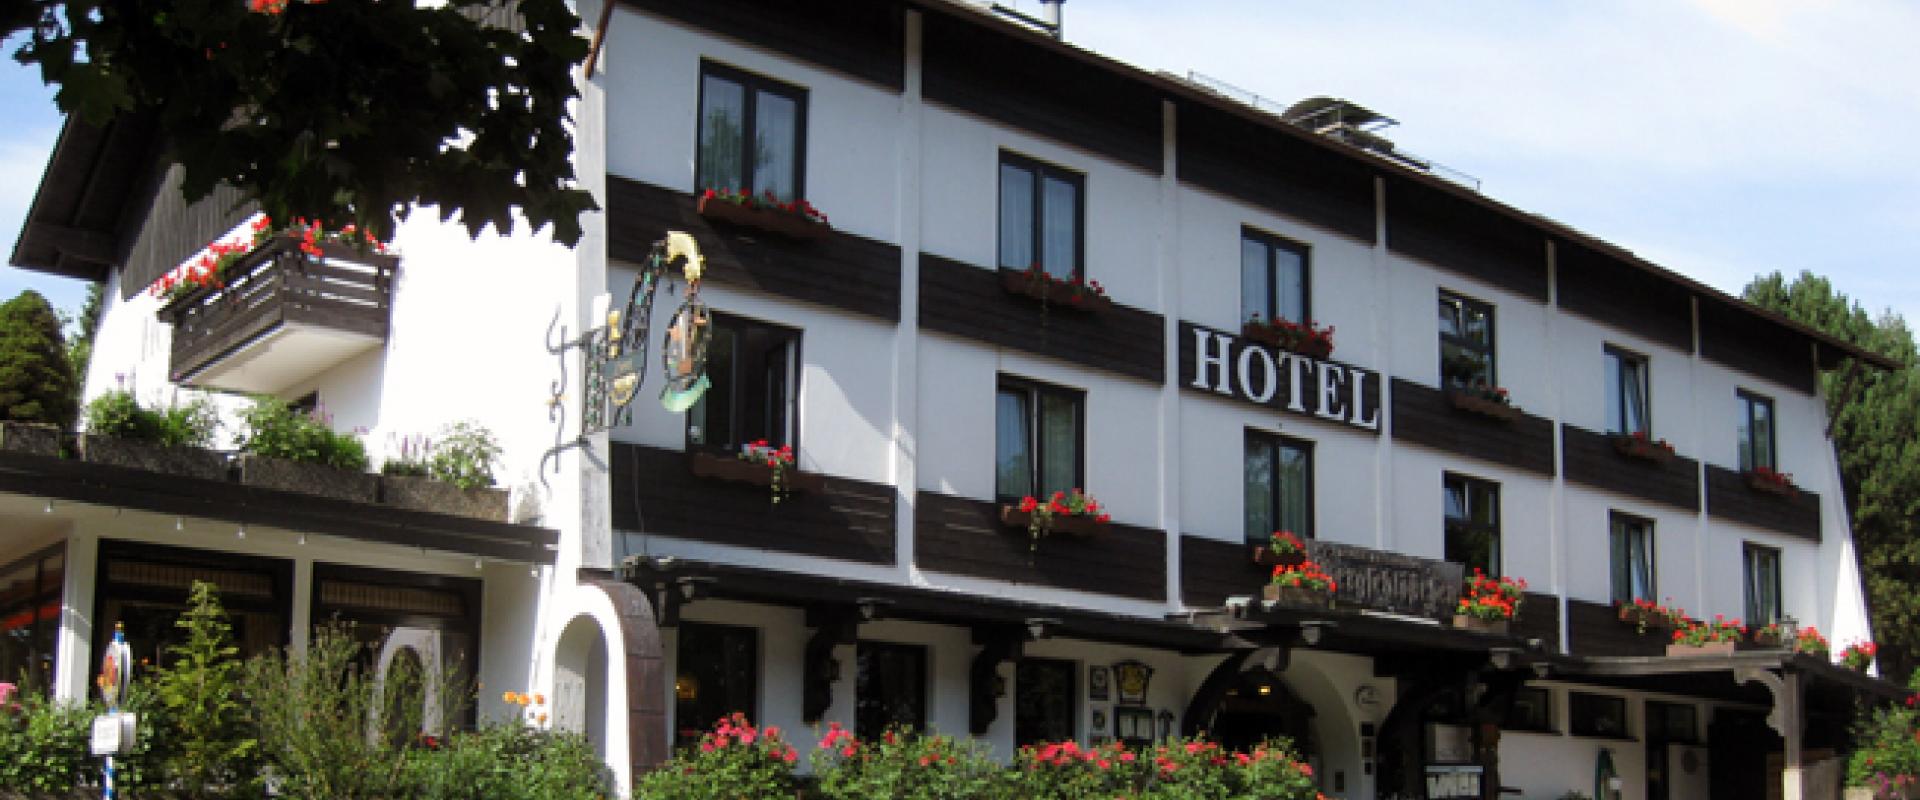 15560 Motorrad Hotel Bergschlösschen in Hunsrück.jpg